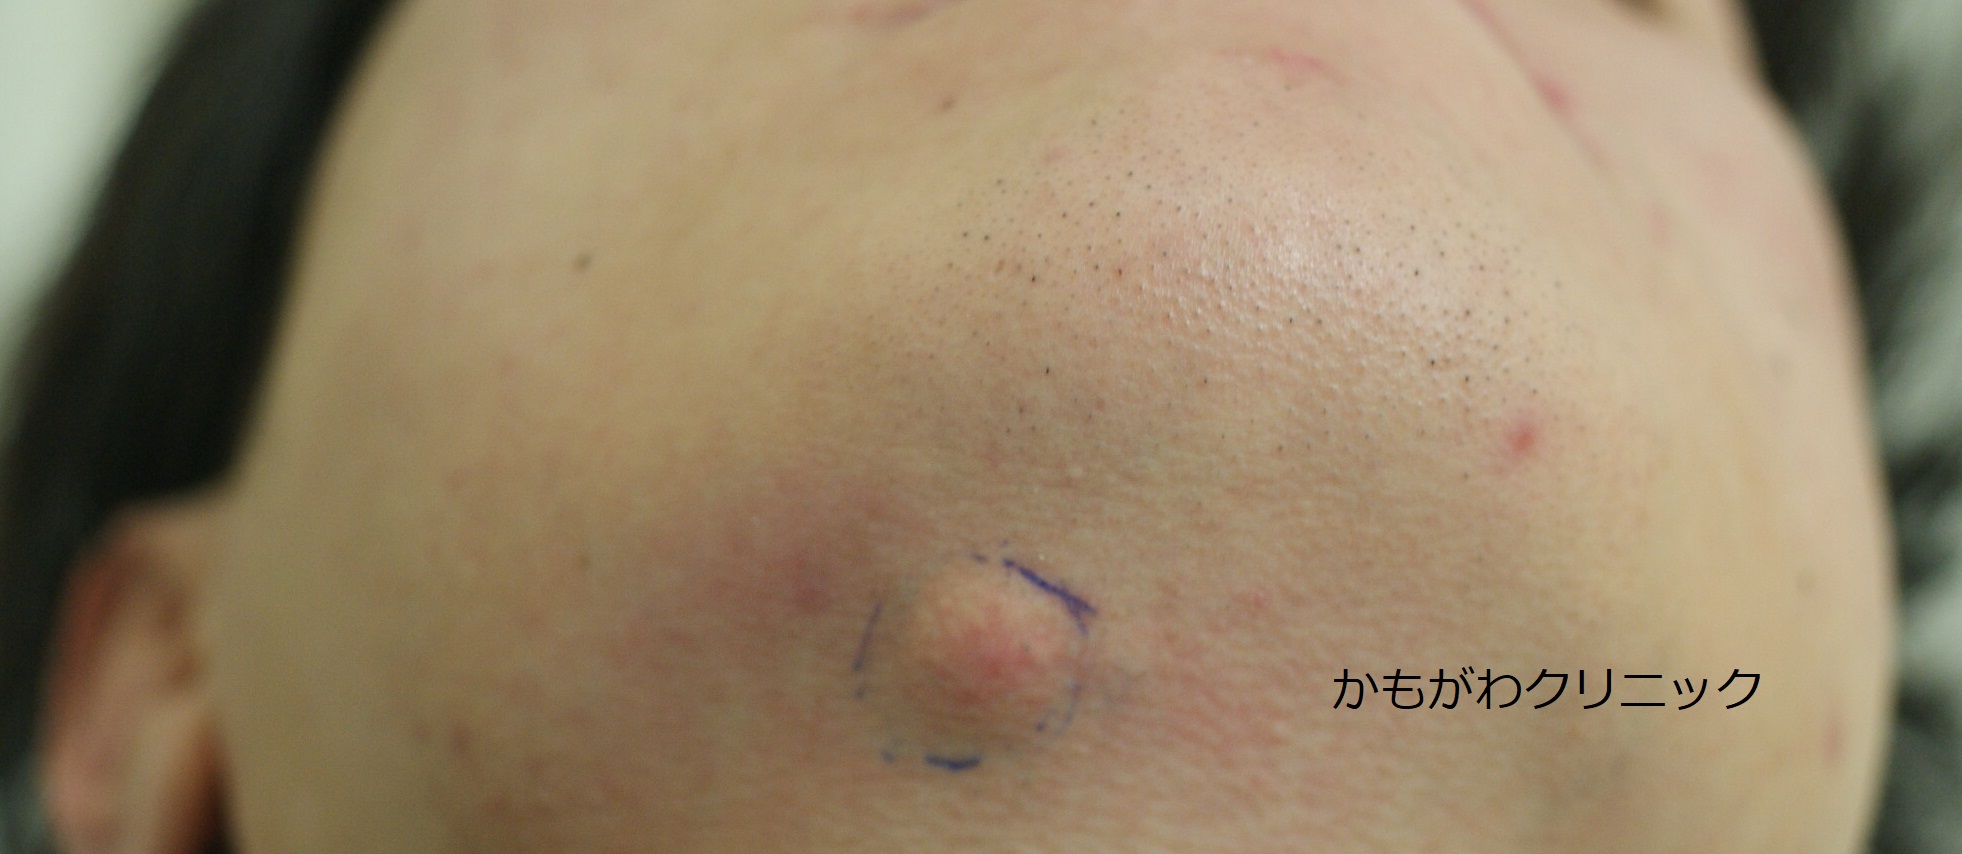 粉瘤 - SSクリニック - 皮膚科・美容外科 - 名古屋市中区 - Part 4